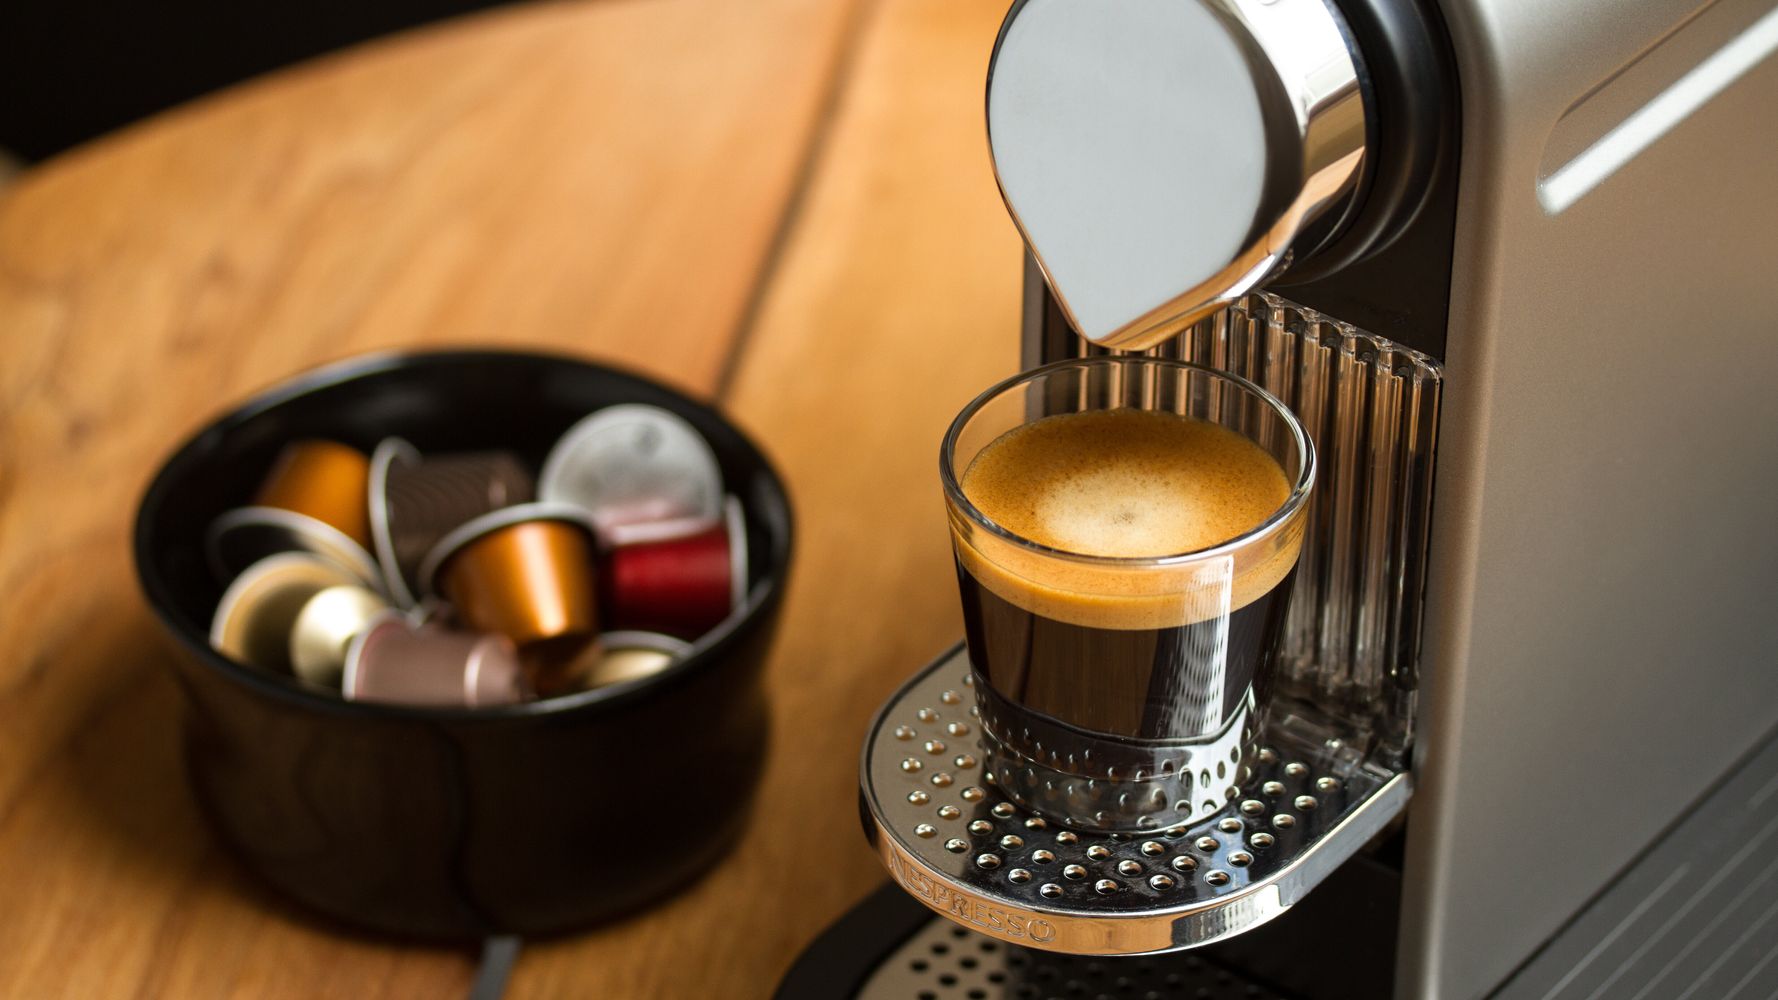 Best Nespresso deals: cheap espresso machines starting at $125